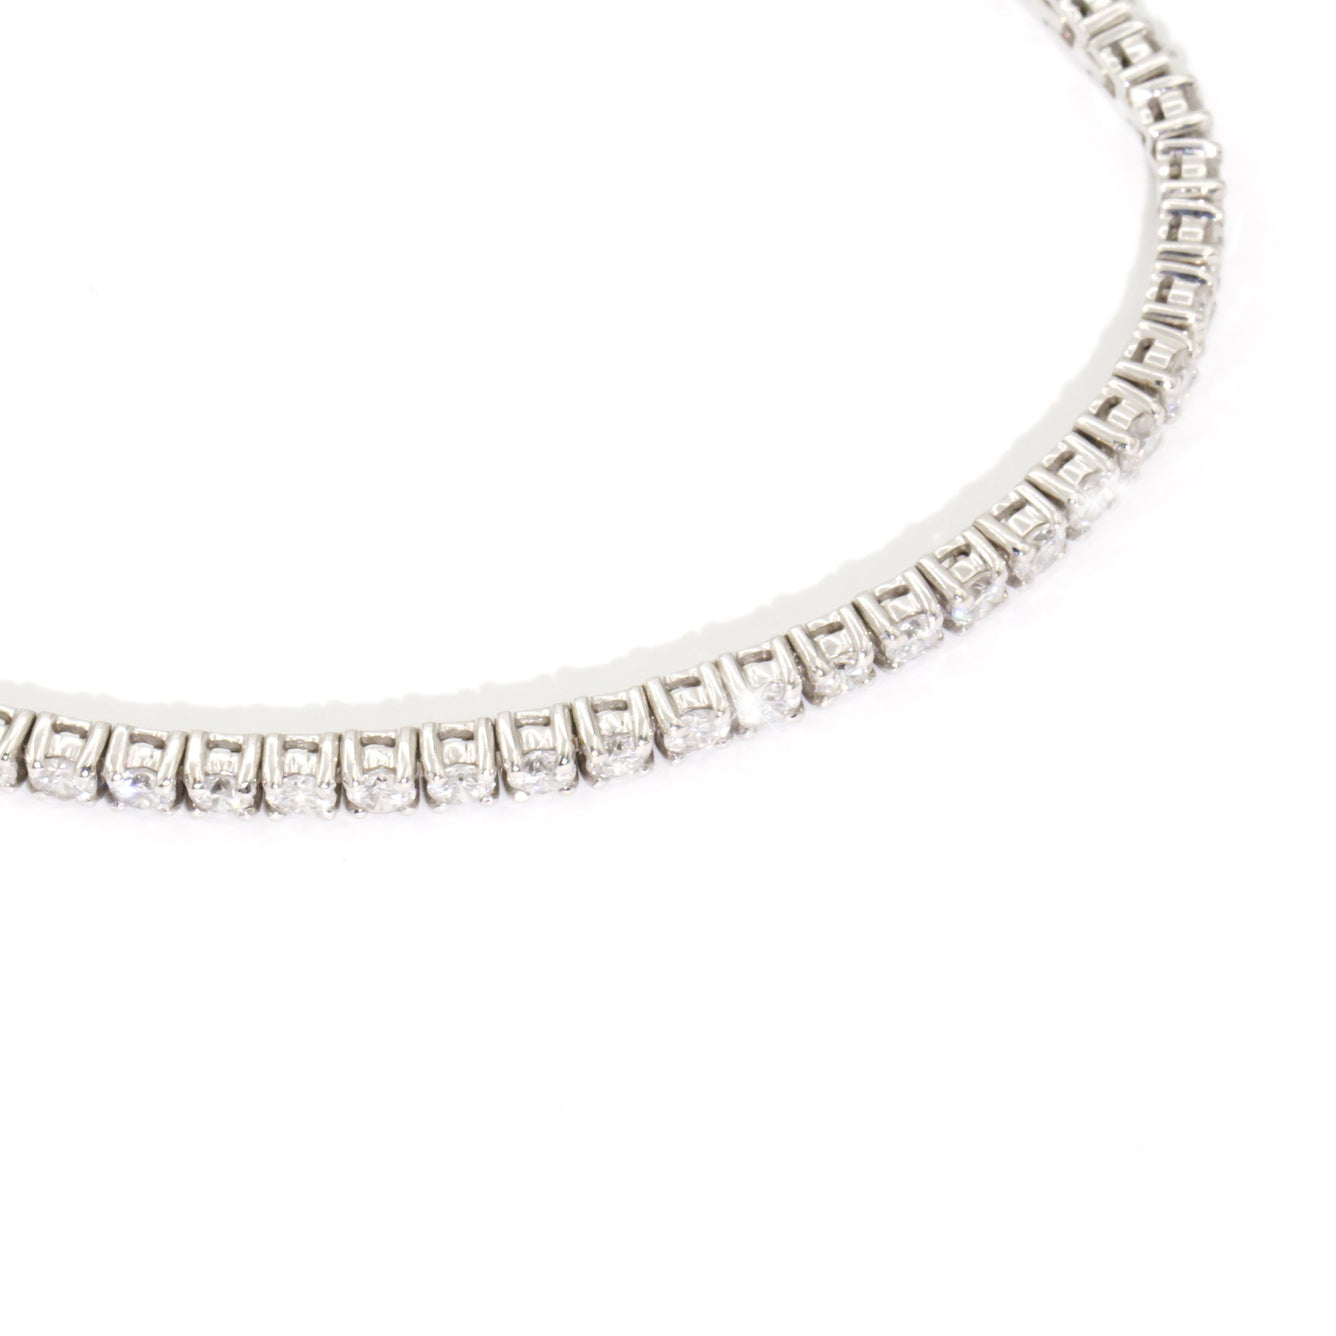 Monroe 18 Carat White Gold Diamond Tennis Bracelet Bracelets/Bangles Imperial Jewellery - Auctions, Antique, Vintage & Estate